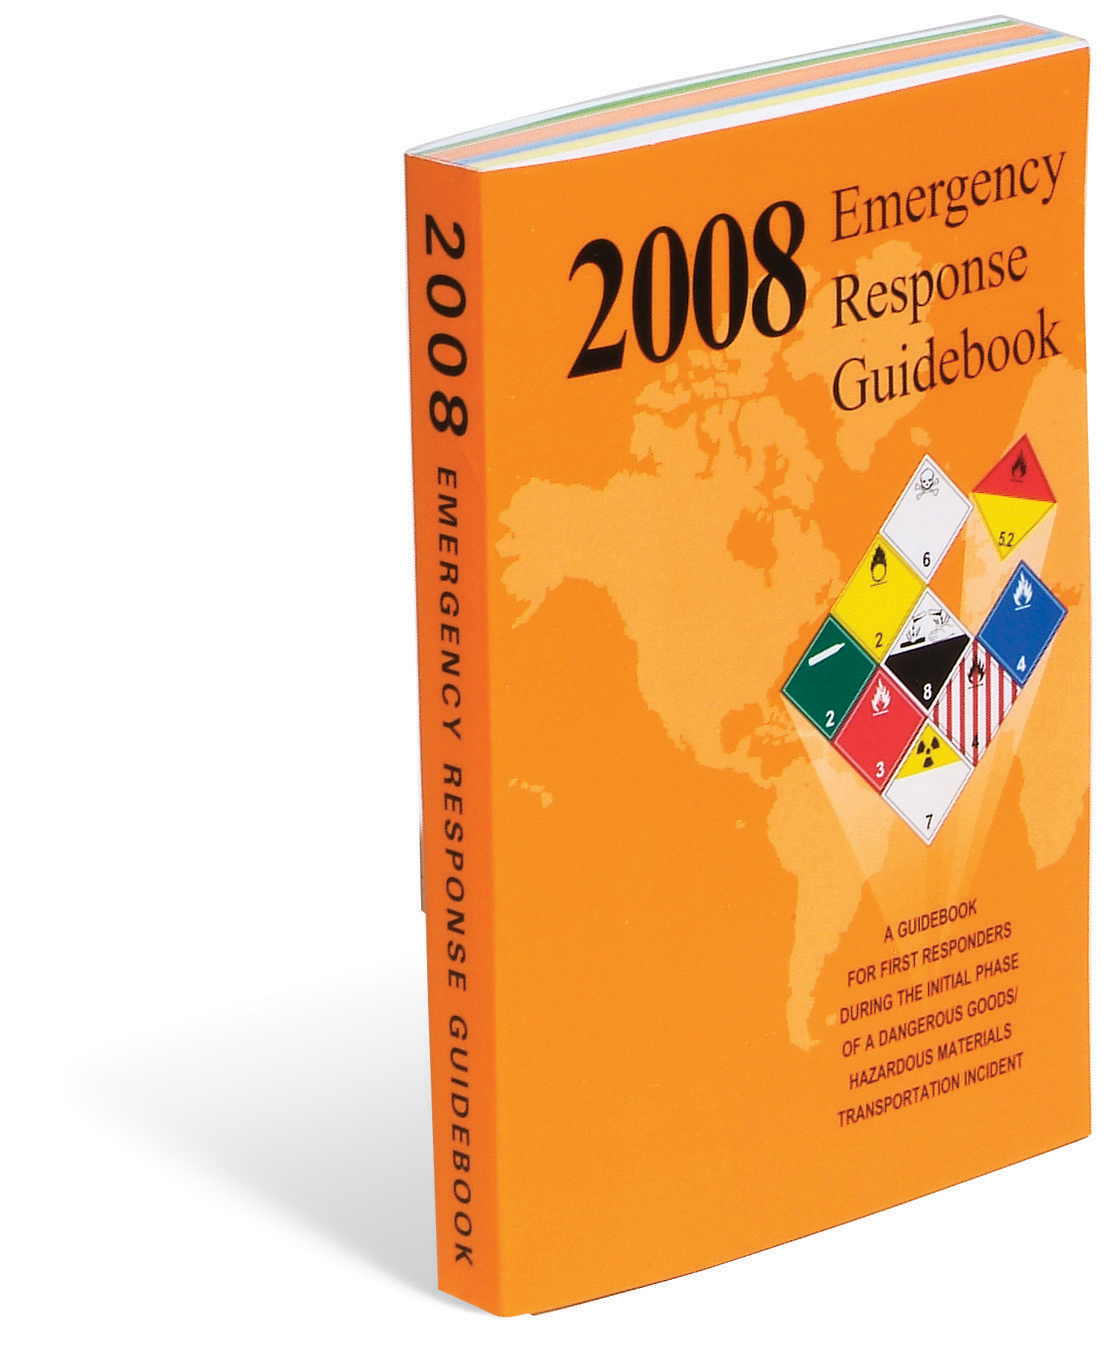 Emergency GuideBook